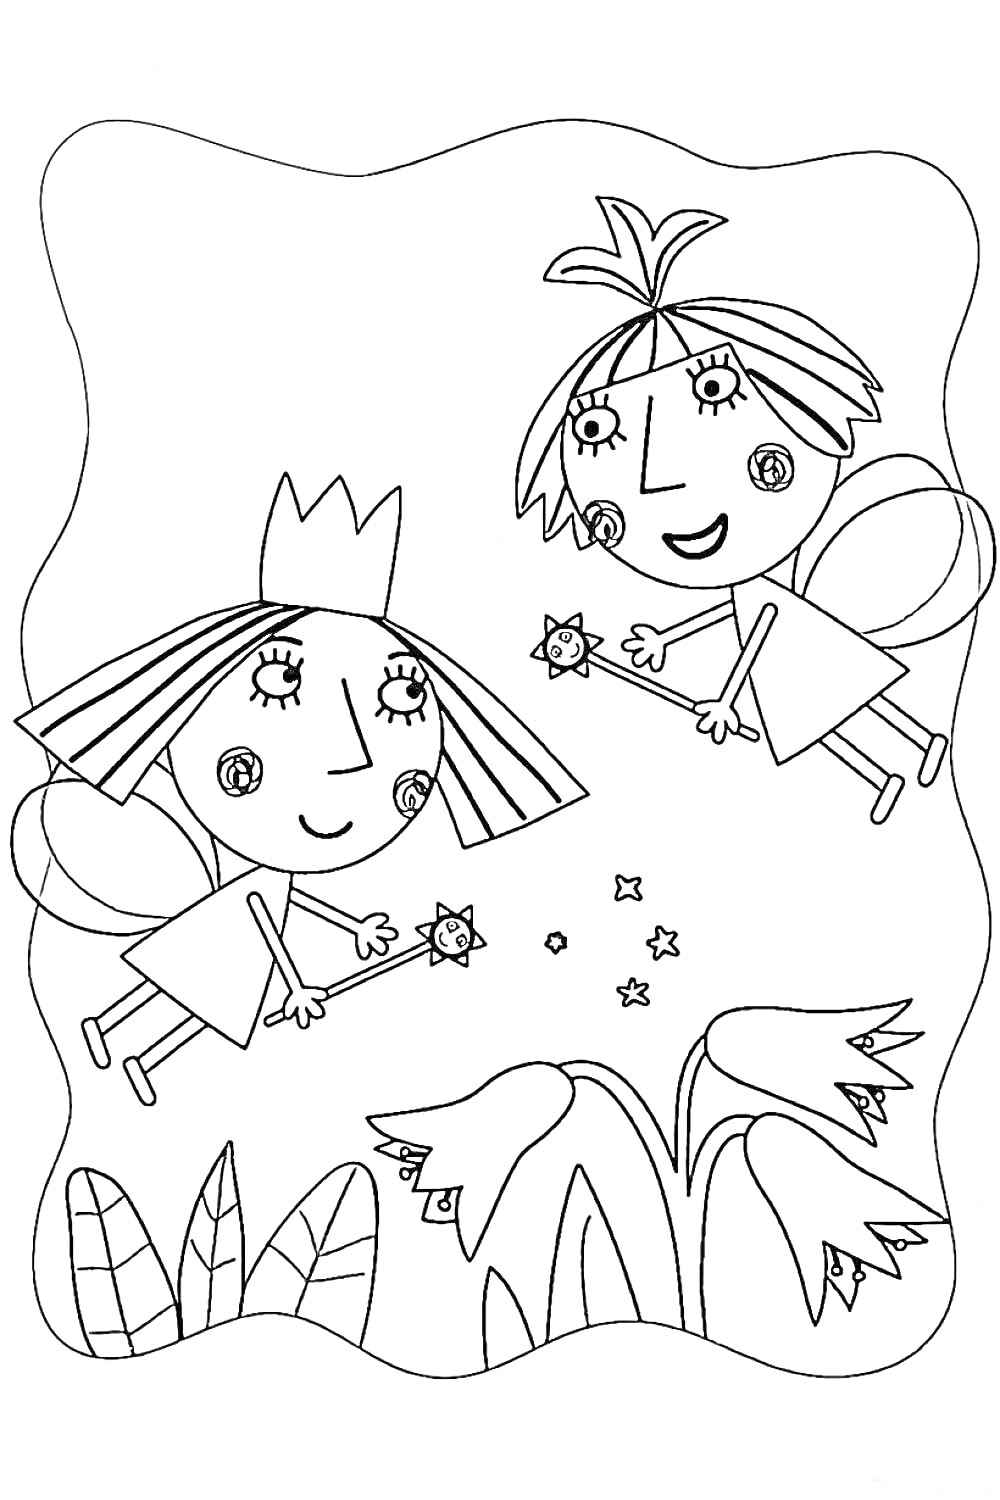 Раскраска Бен и Холли с волшебными палочками, летают рядом с цветами